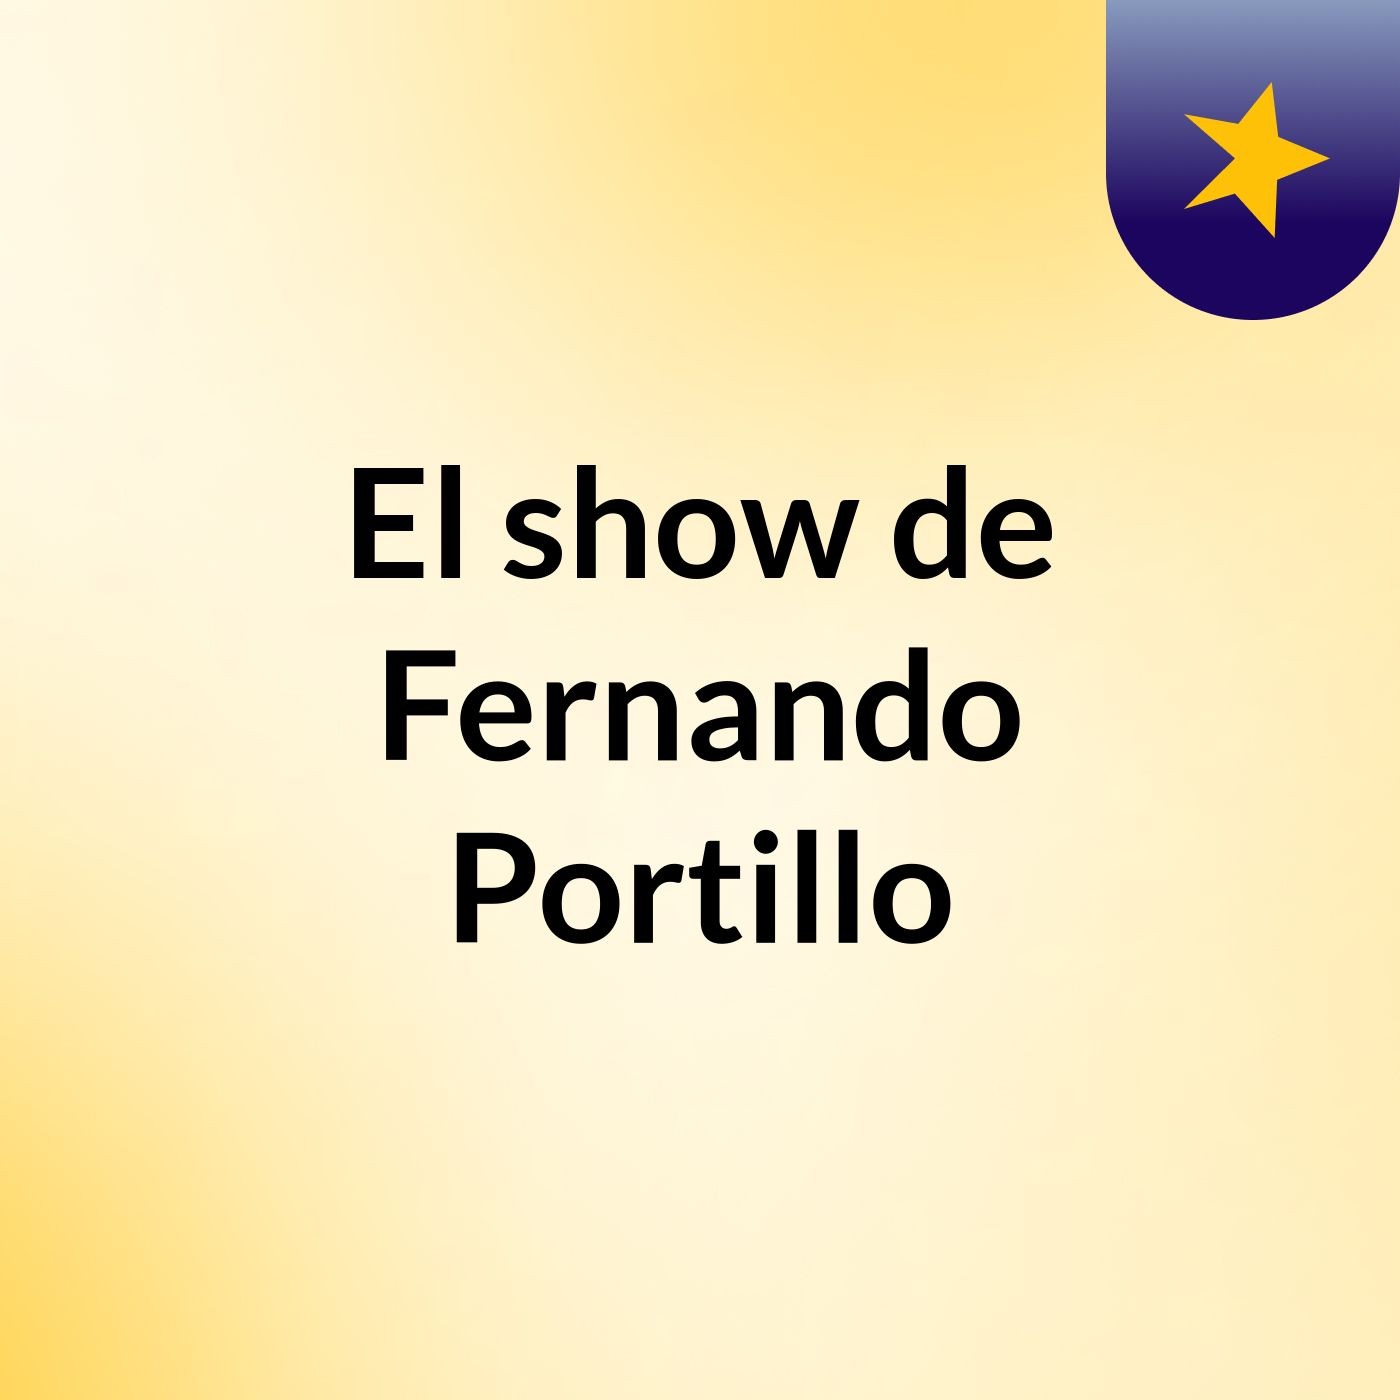 El show de Fernando Portillo